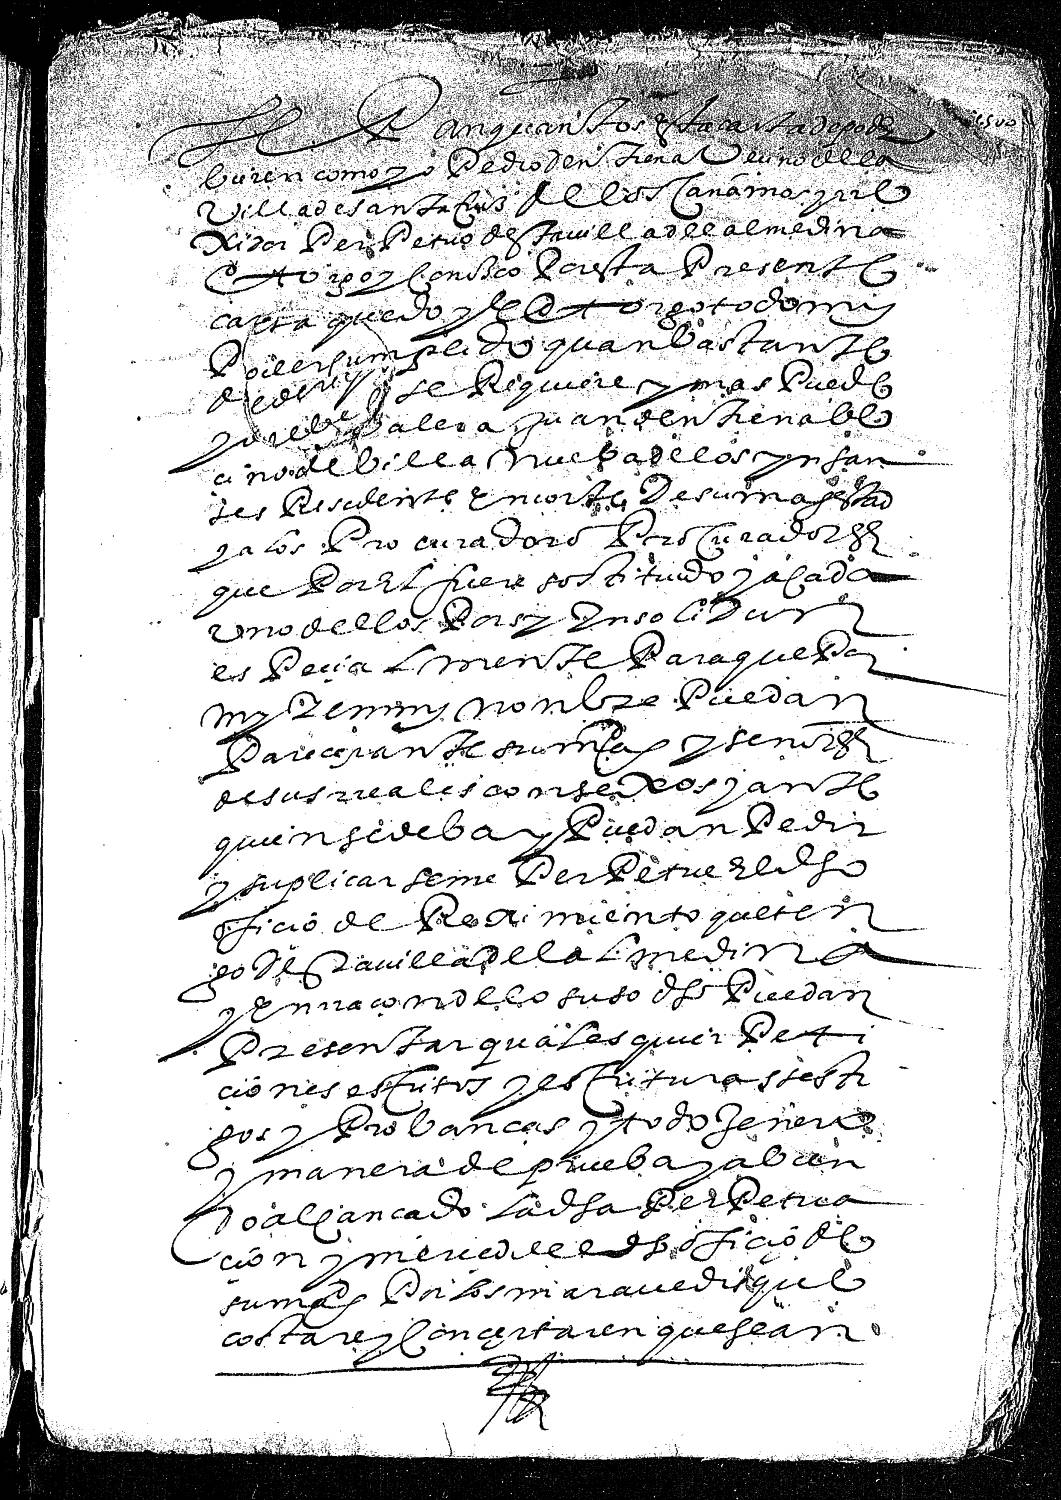 Carta de poder de Pedro de Entrena, vecino de la villa de Santa Cruz de los Cáñamos y regidor de Almedina, dada a Juan de Entrena para que le consiga en la Corte la perpetuación de su oficio.